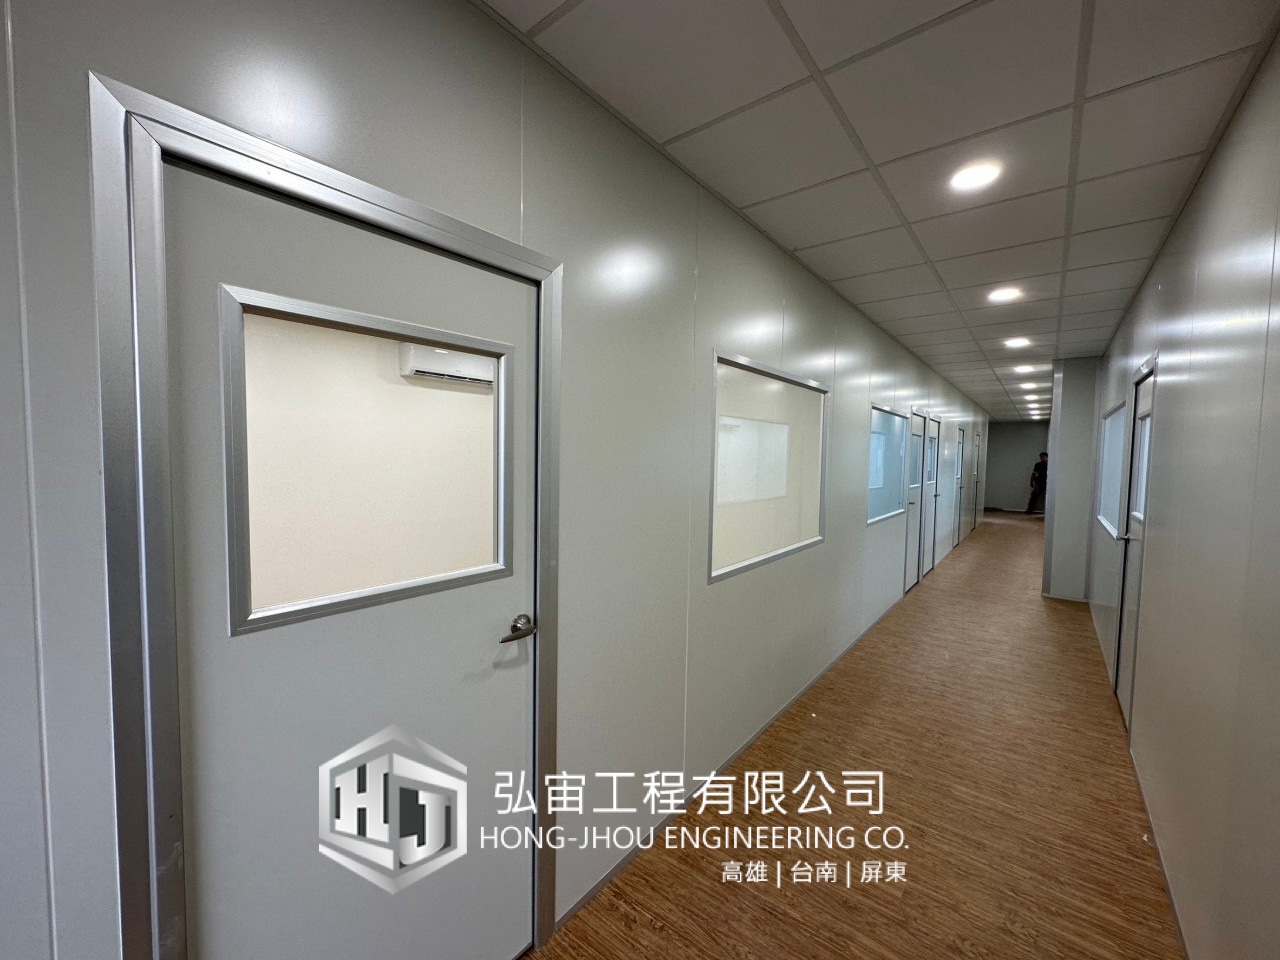 高雄半導體公司新的辦公室庫板隔間與廁所翻修及衛浴設備更換、插座與網路配置